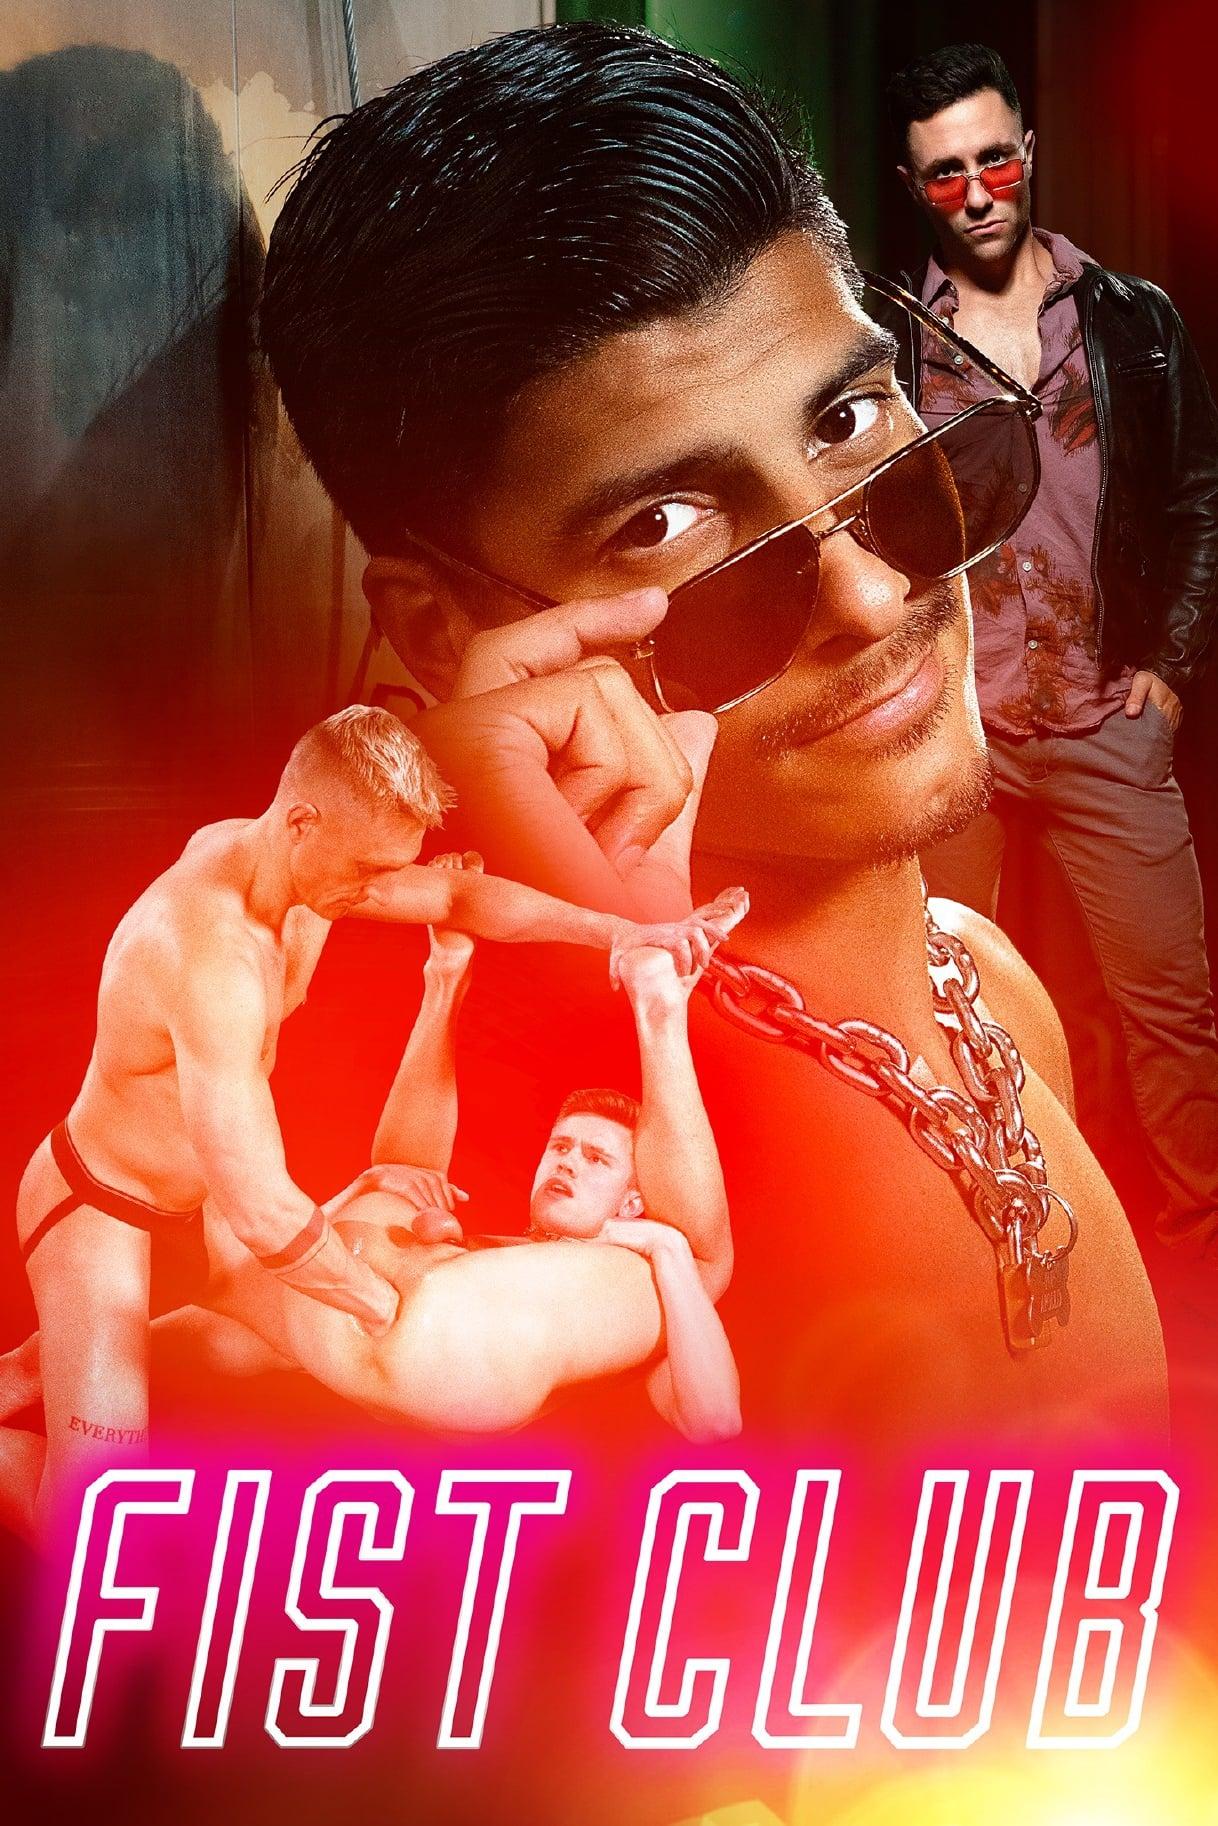 Fist Club poster